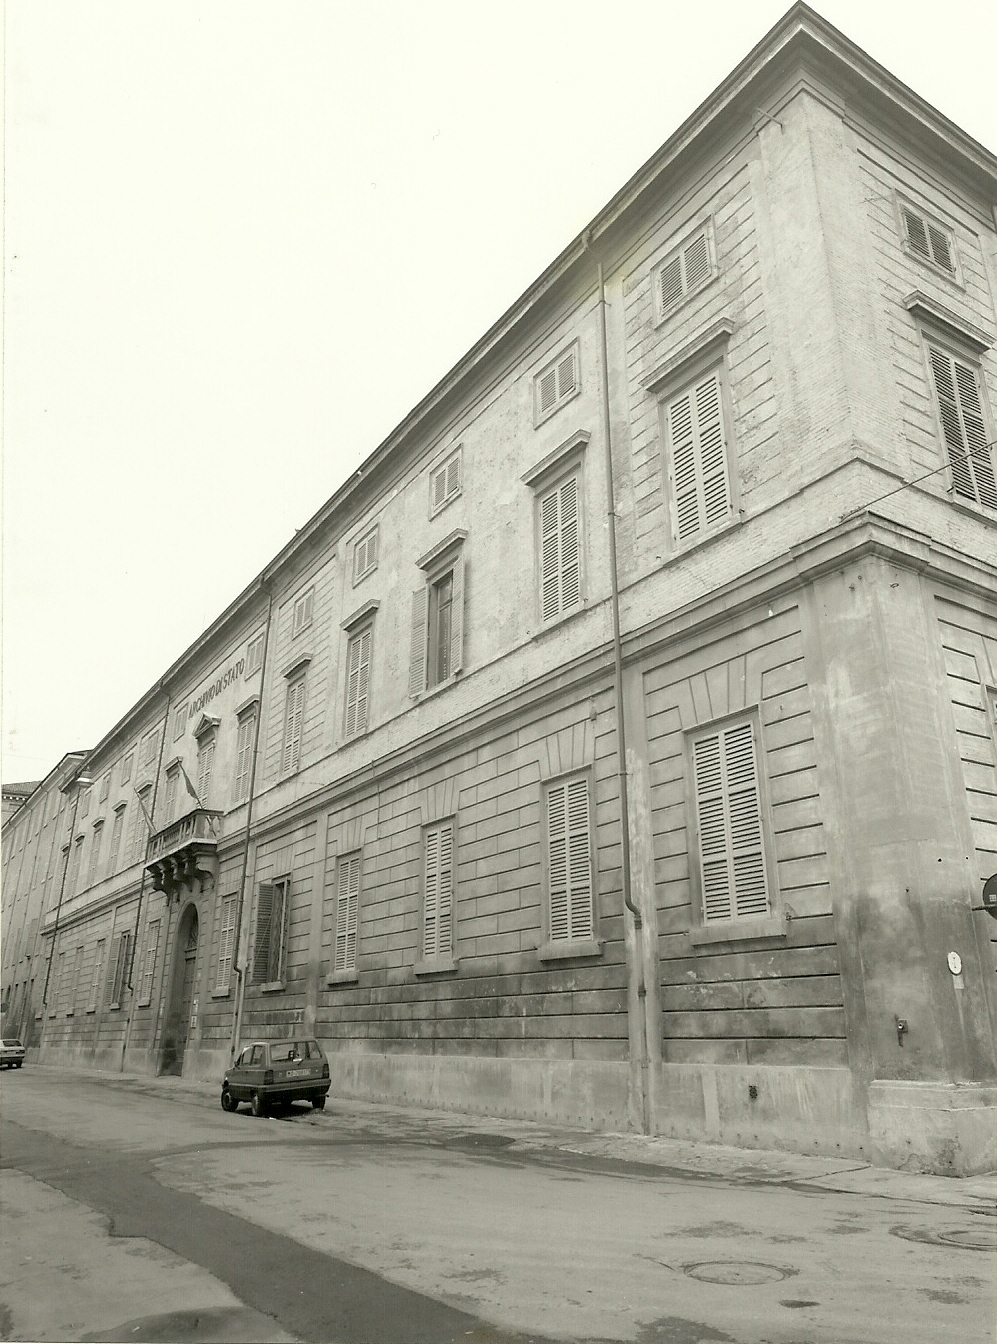 Convento domenicano (convento, domenicano) - Modena (MO)  (sec. XIX)